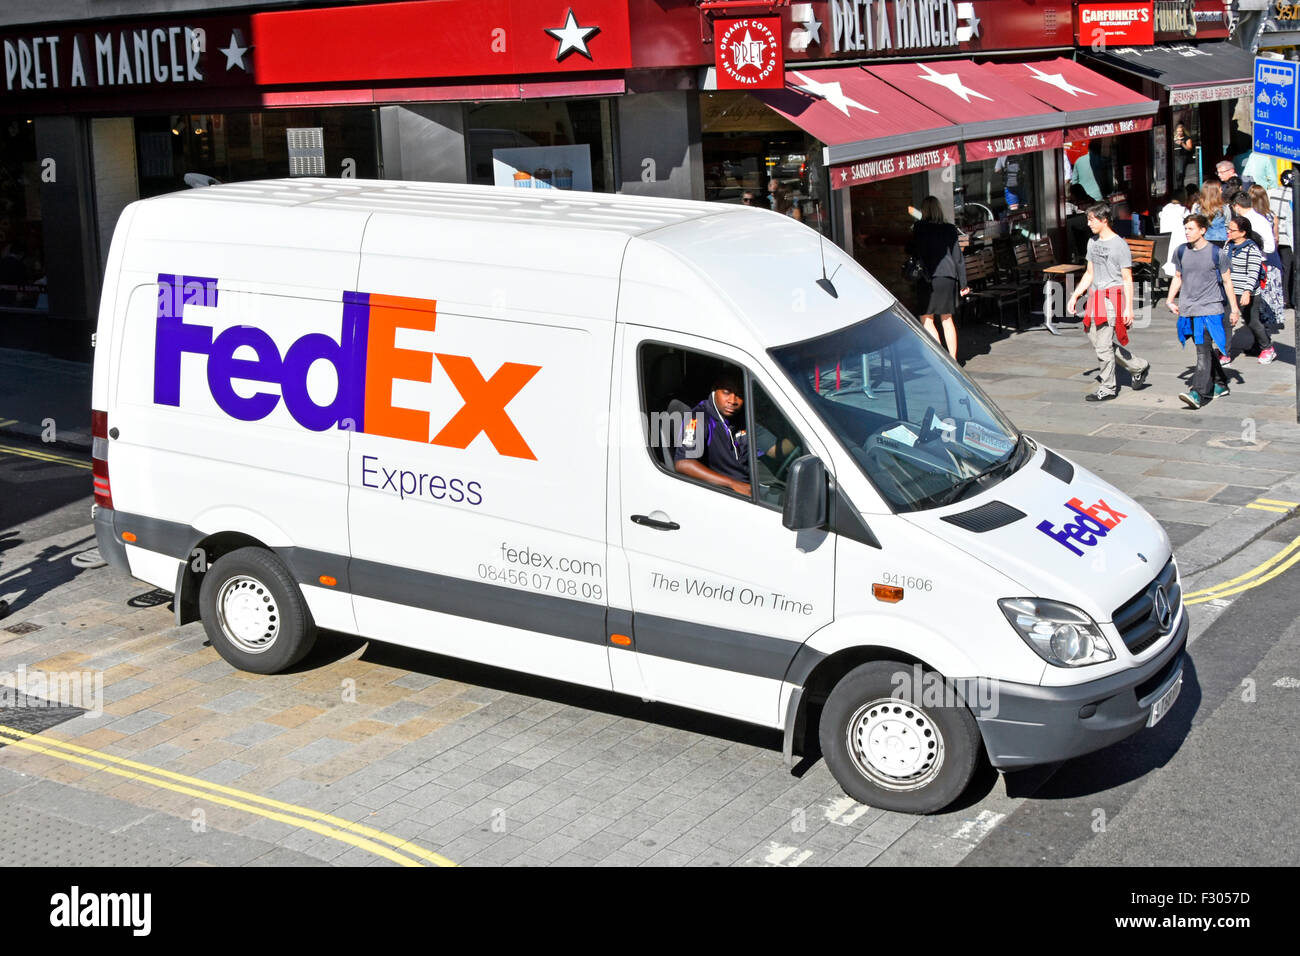 Vue aérienne sur le minibus de livraison FedEx Express blanc avec logo de la marque et chauffeur dans la rue commerçante ensoleillée Strand London England UK Banque D'Images